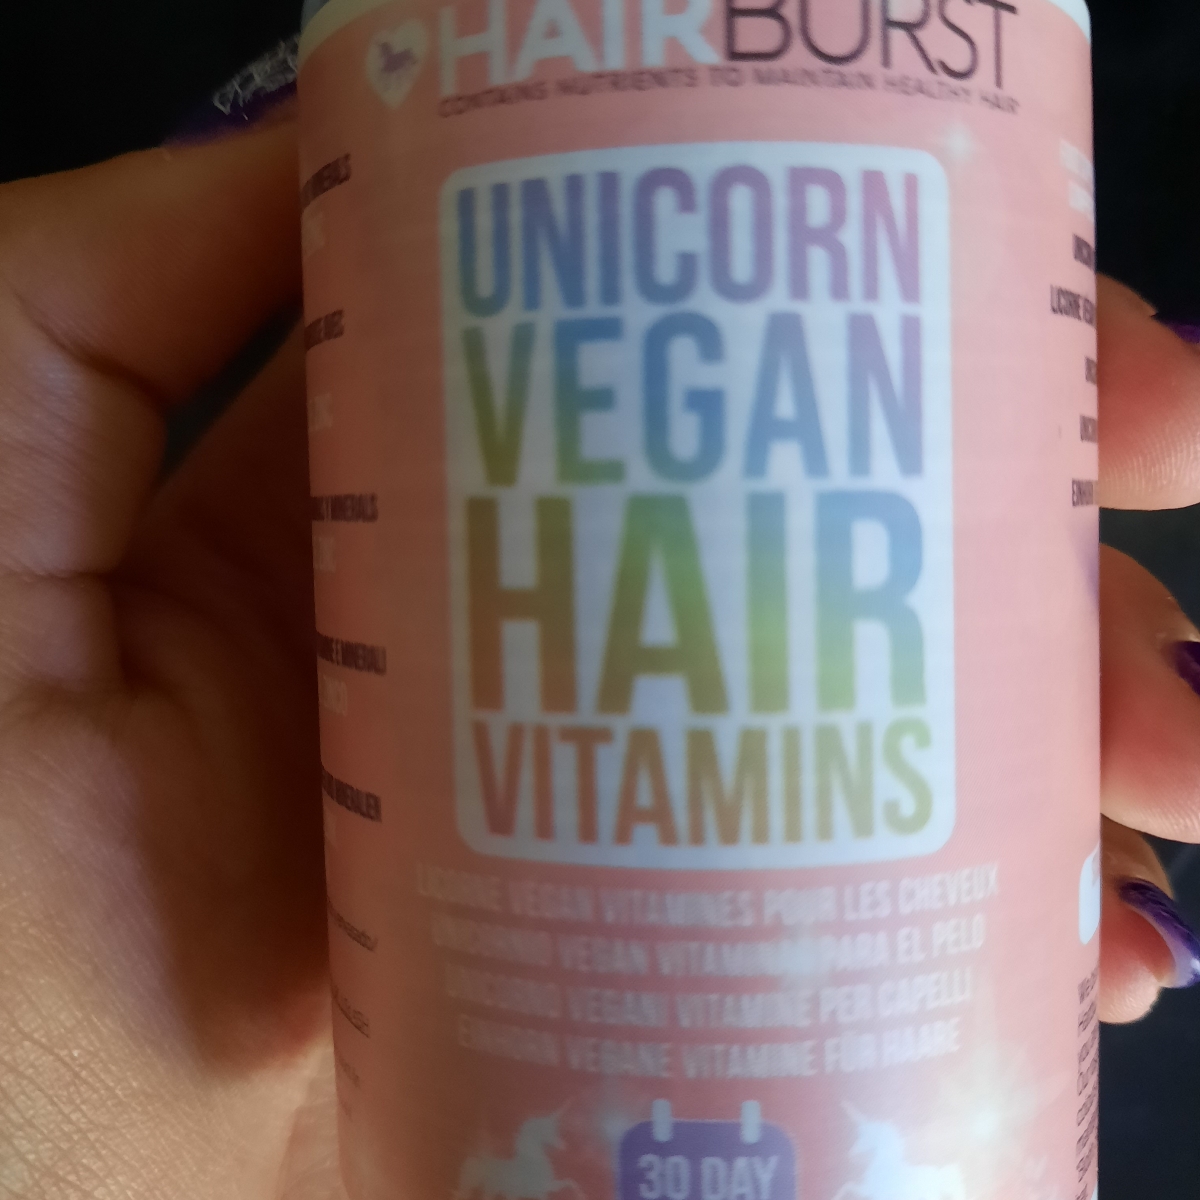 Hairburst Unicorn vegan hair vitamins Reviews | abillion